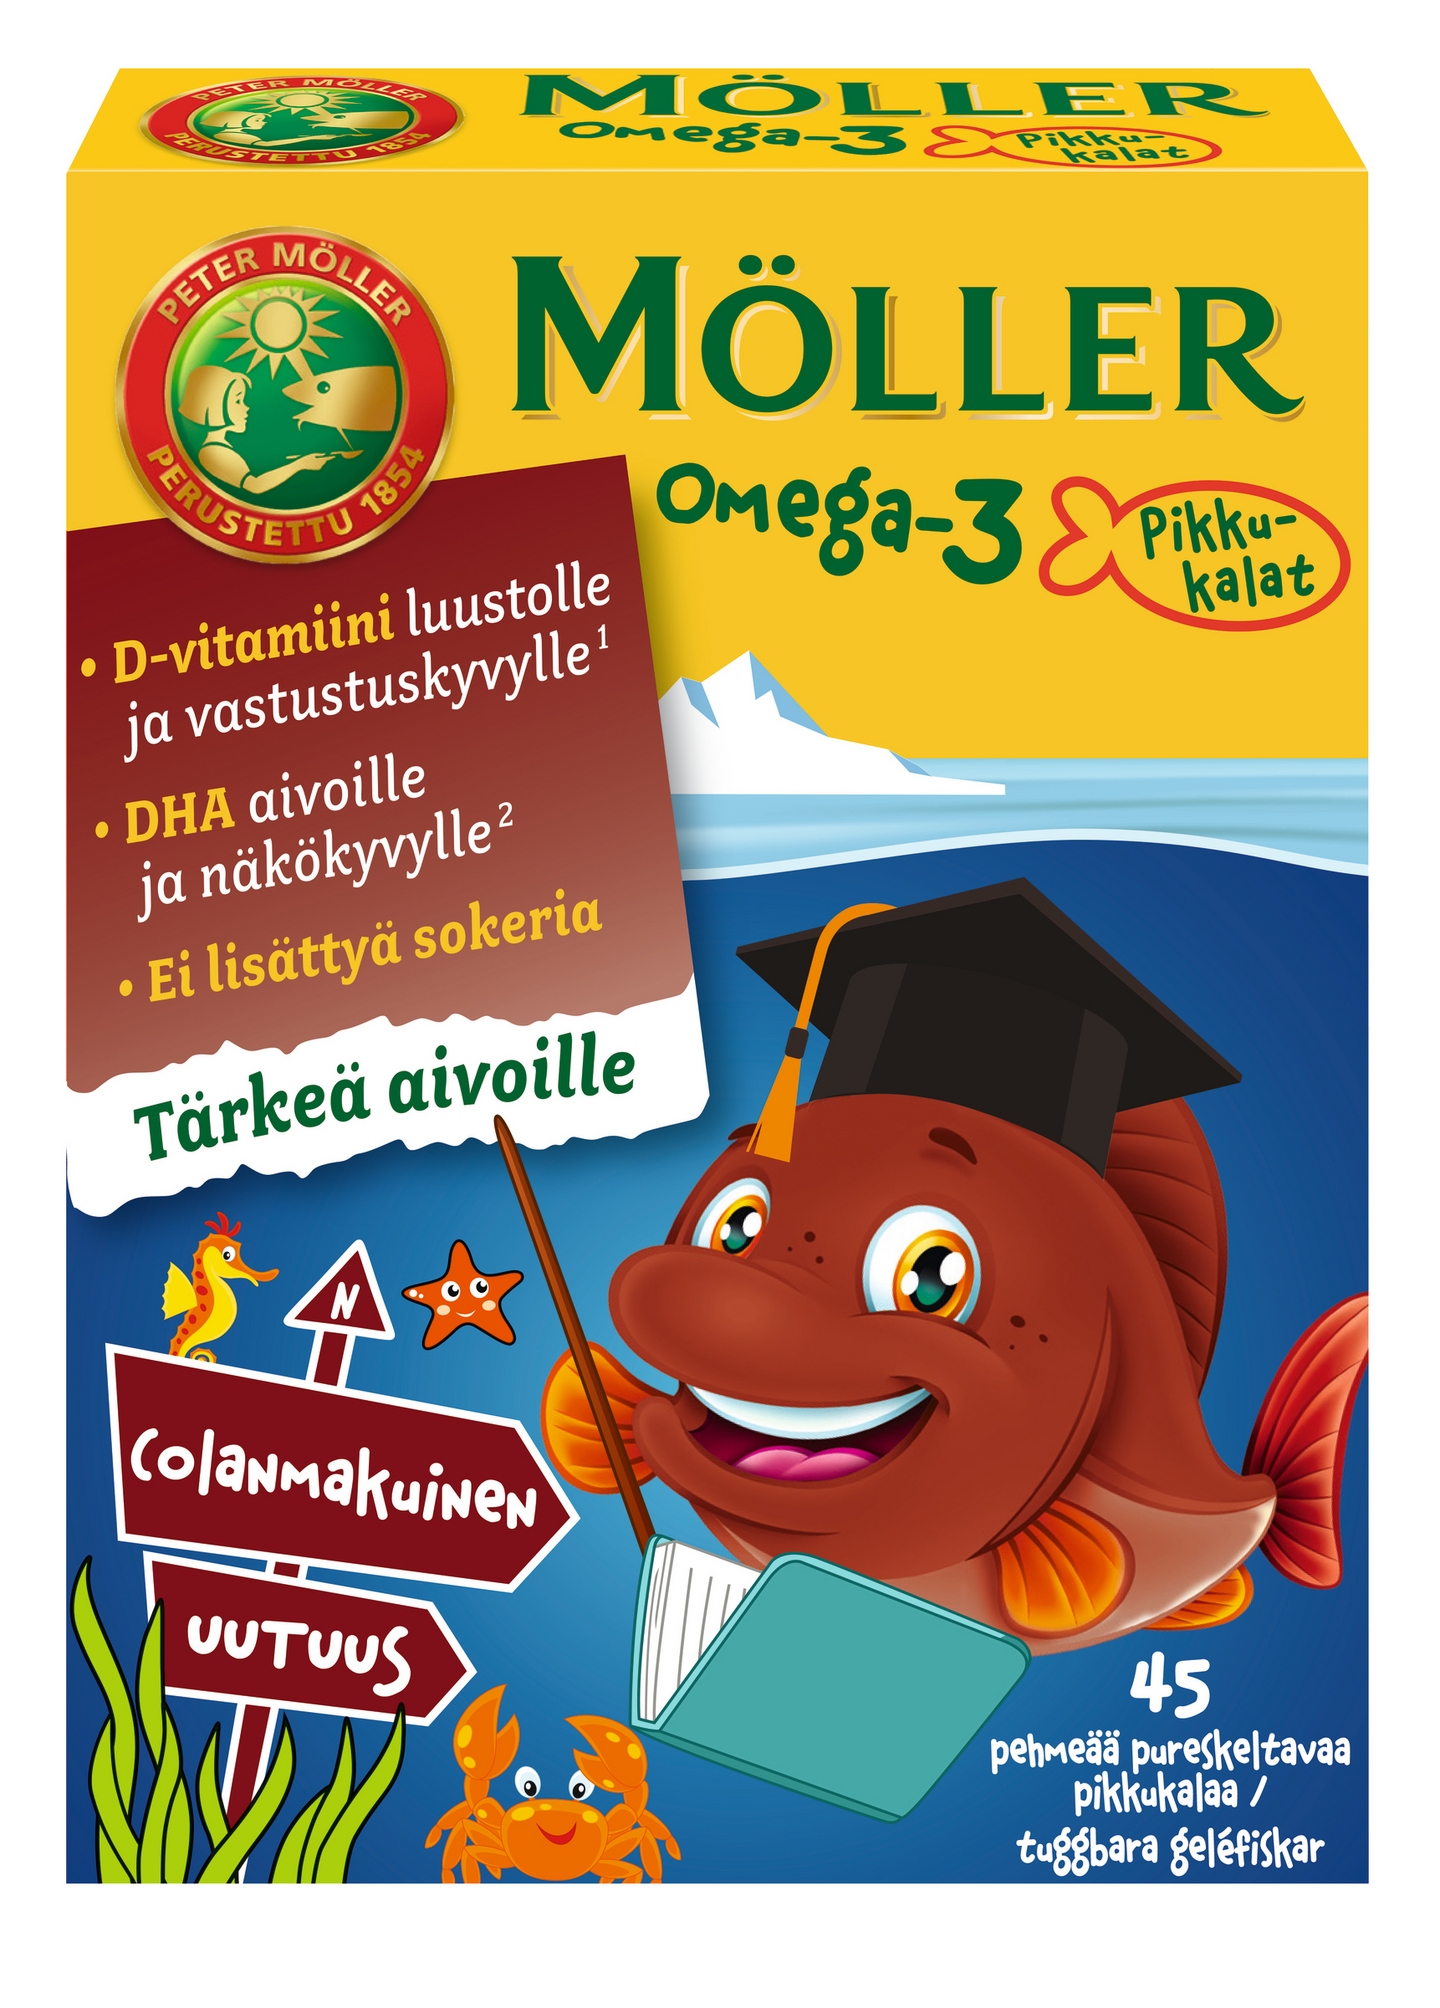 Möller Omega-3 Pikkukalat cola 45kpl 54g